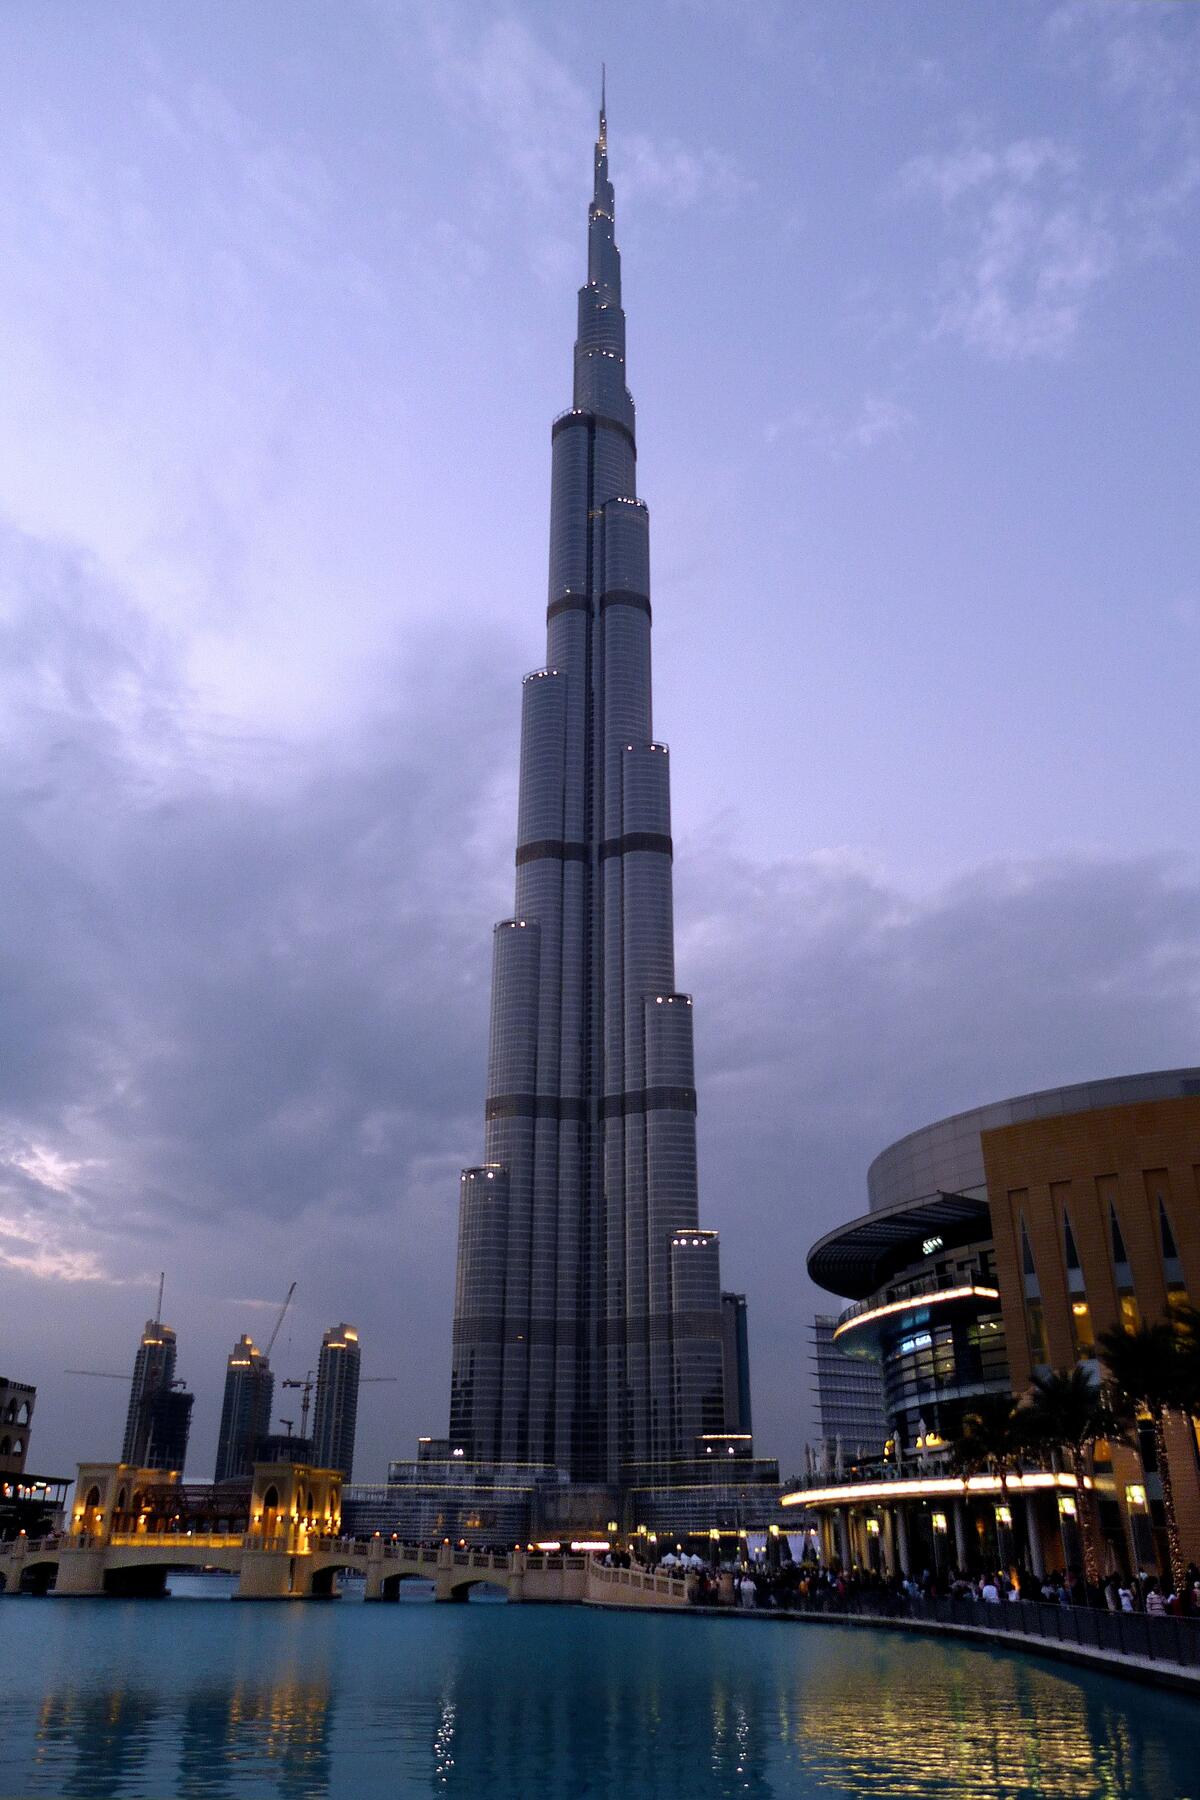 Обои с высоким шпилем в Дубае